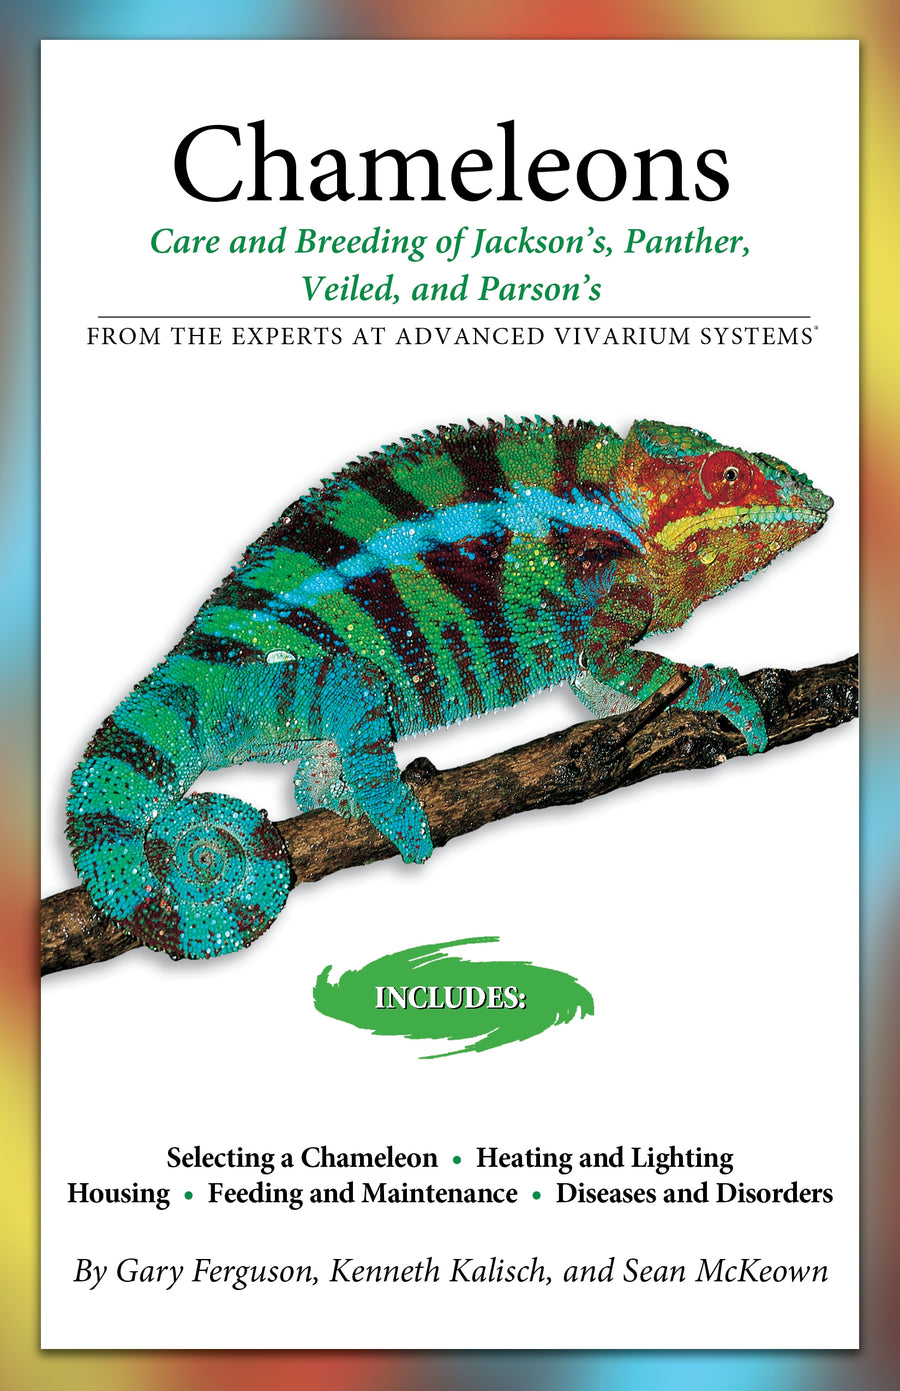 Chameleons Paperback Publication: 2007/03/15